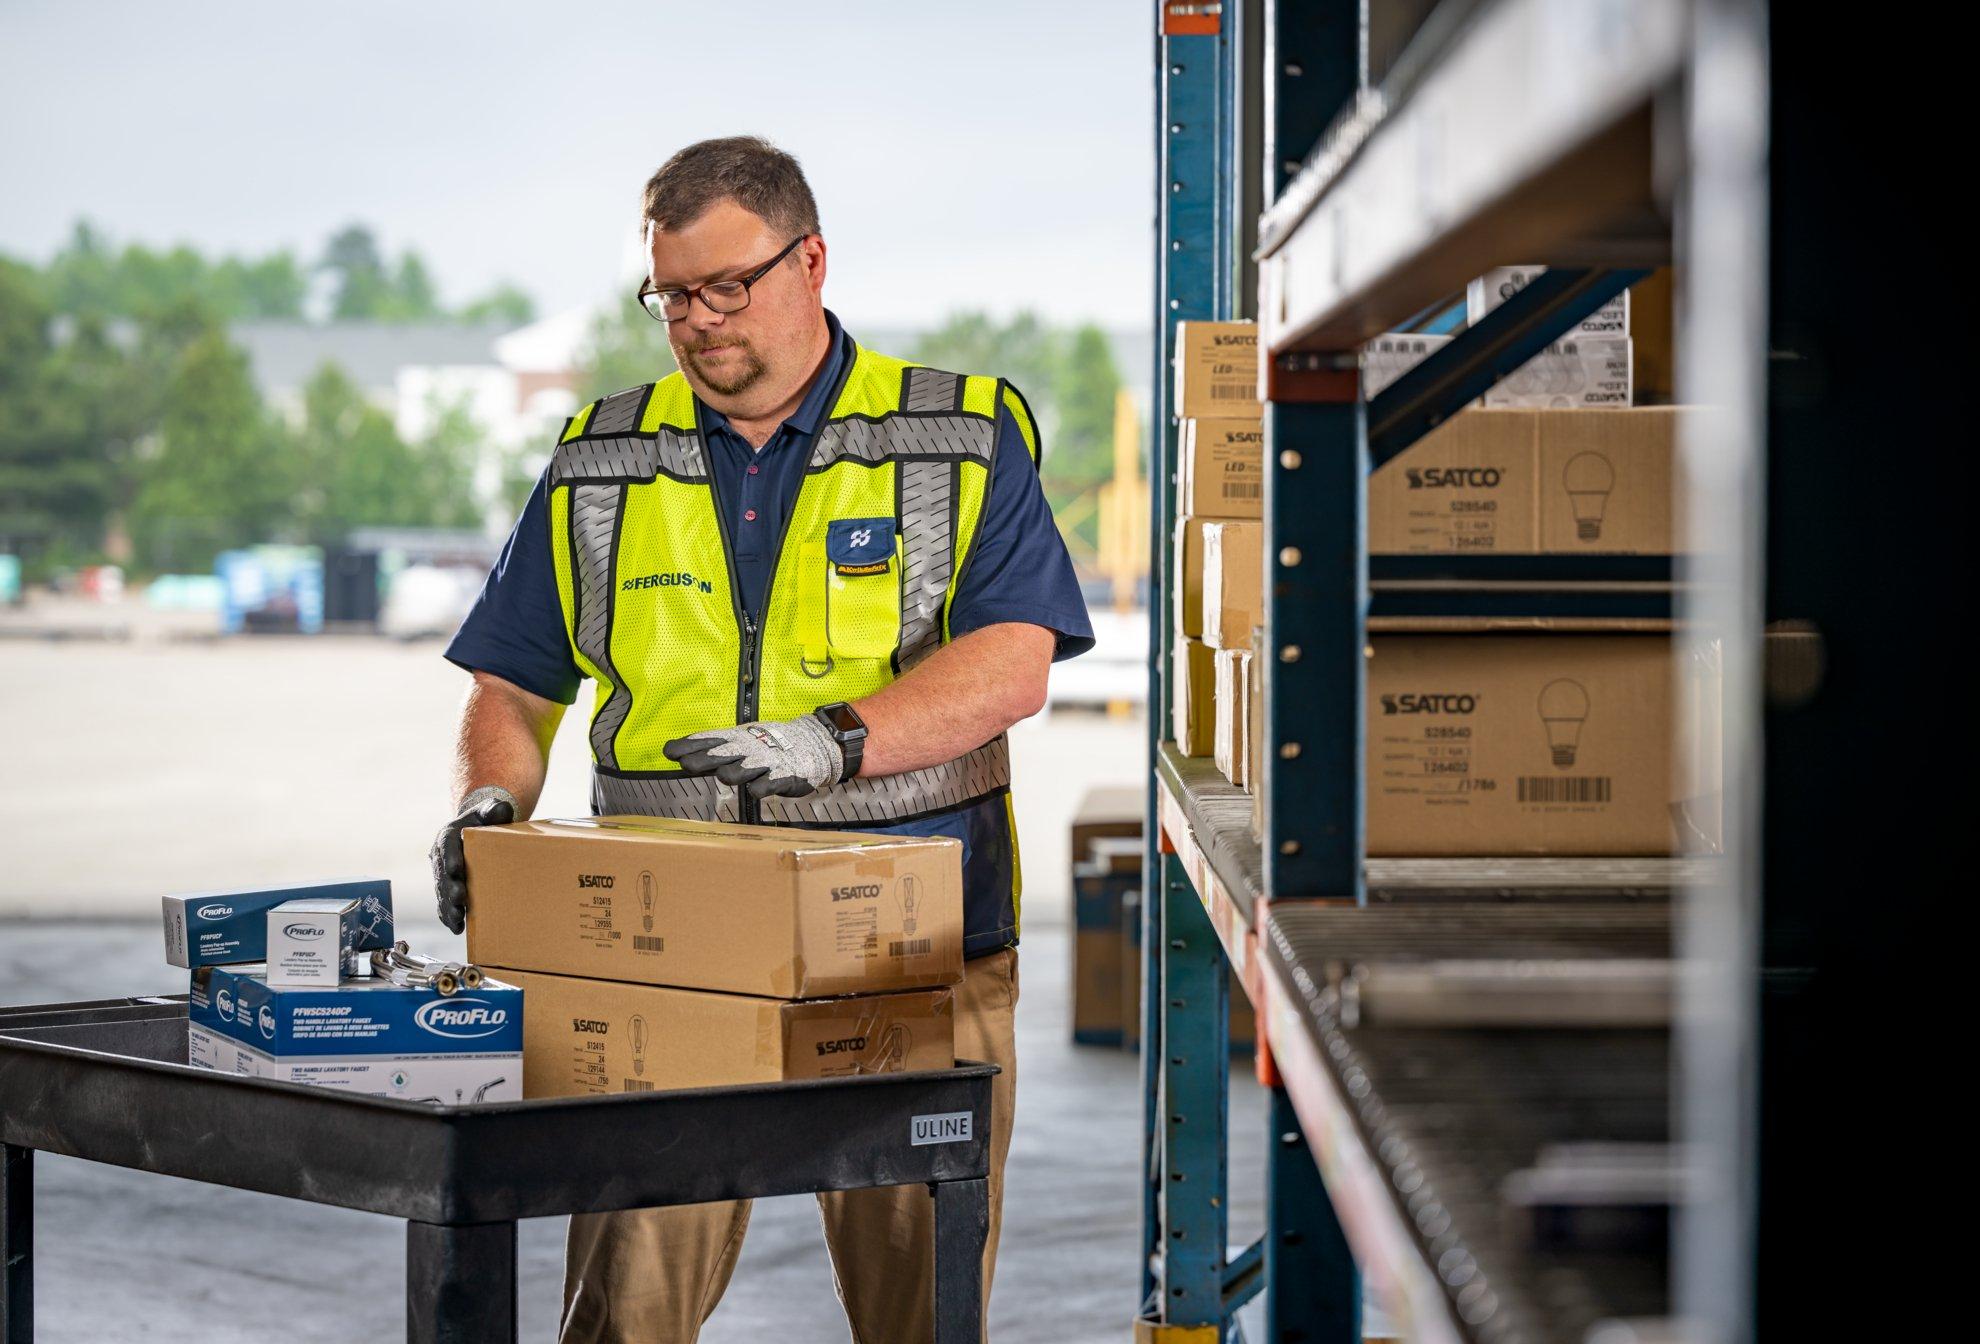 An associate in a distribution center unloads packages onto a warehouse shelf.